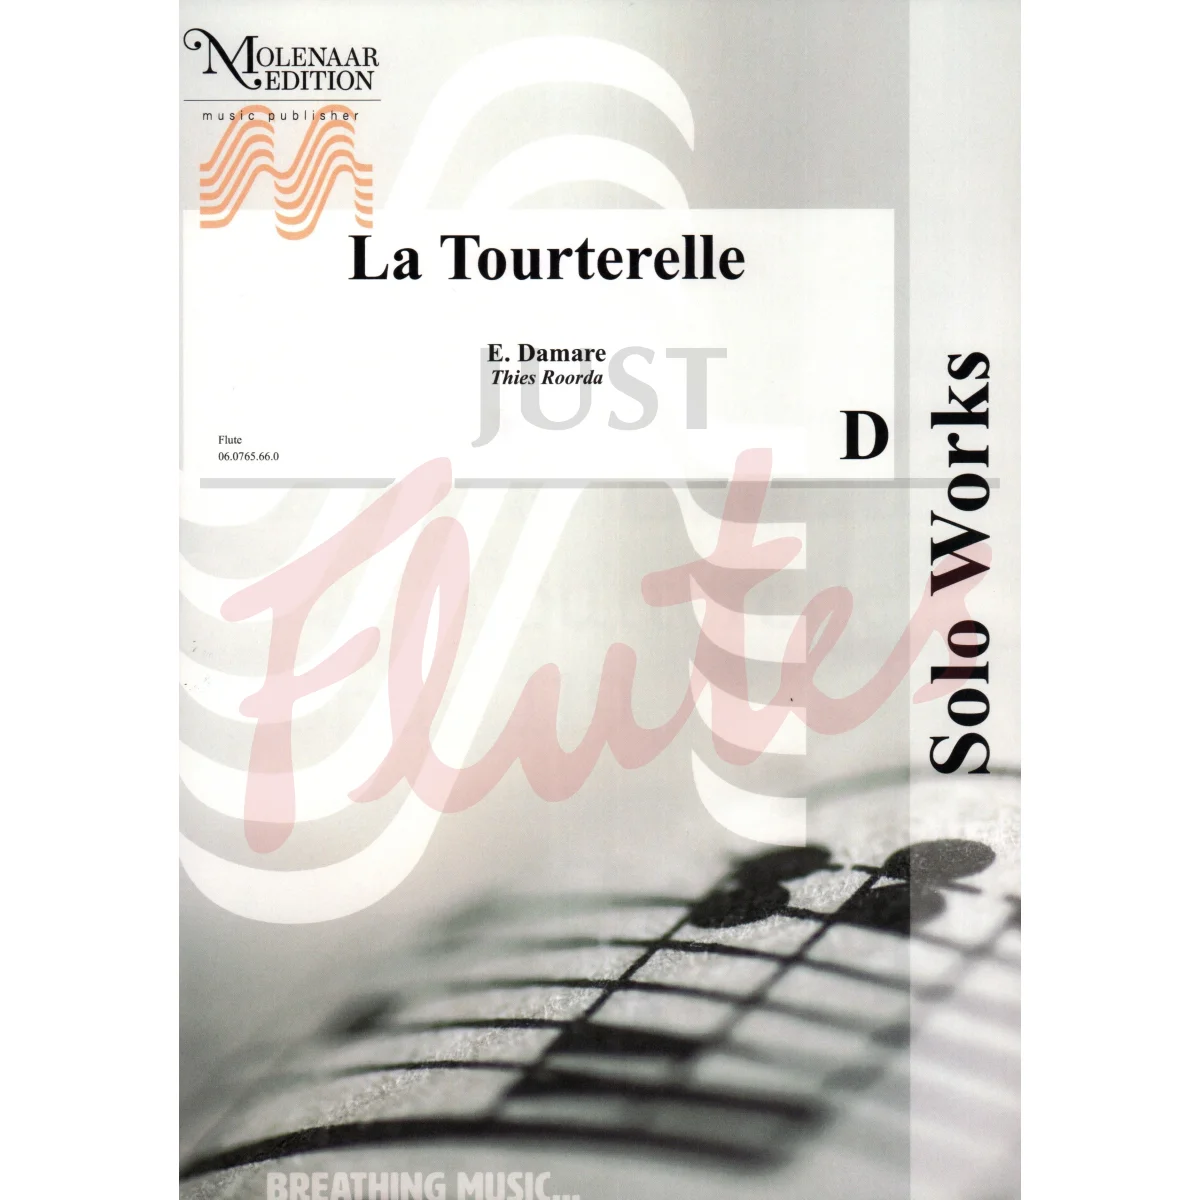 La Tourterelle for Piccolo and Piano